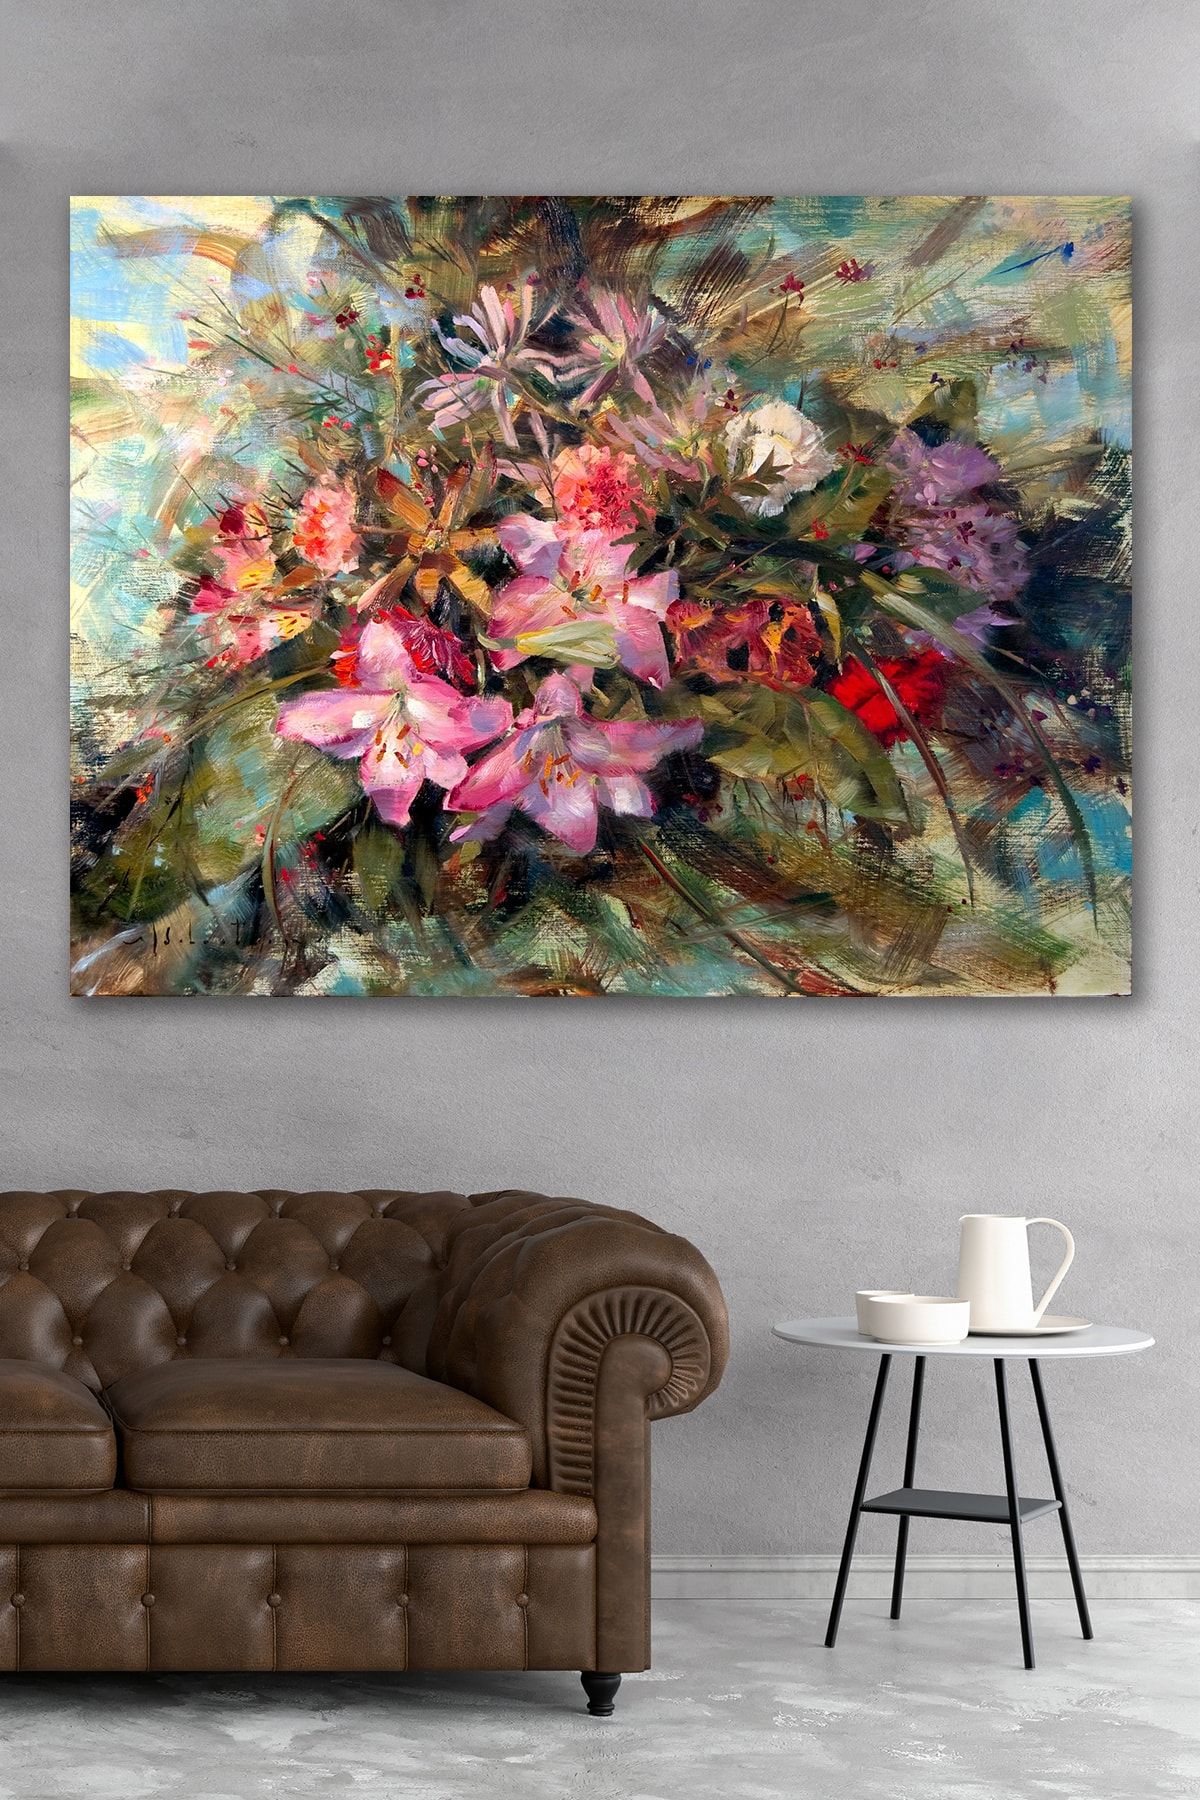 Hediyeler Kapında Yağlı Boya Görünümlü Çiçek Buketi Kanvas Tablo 90x130